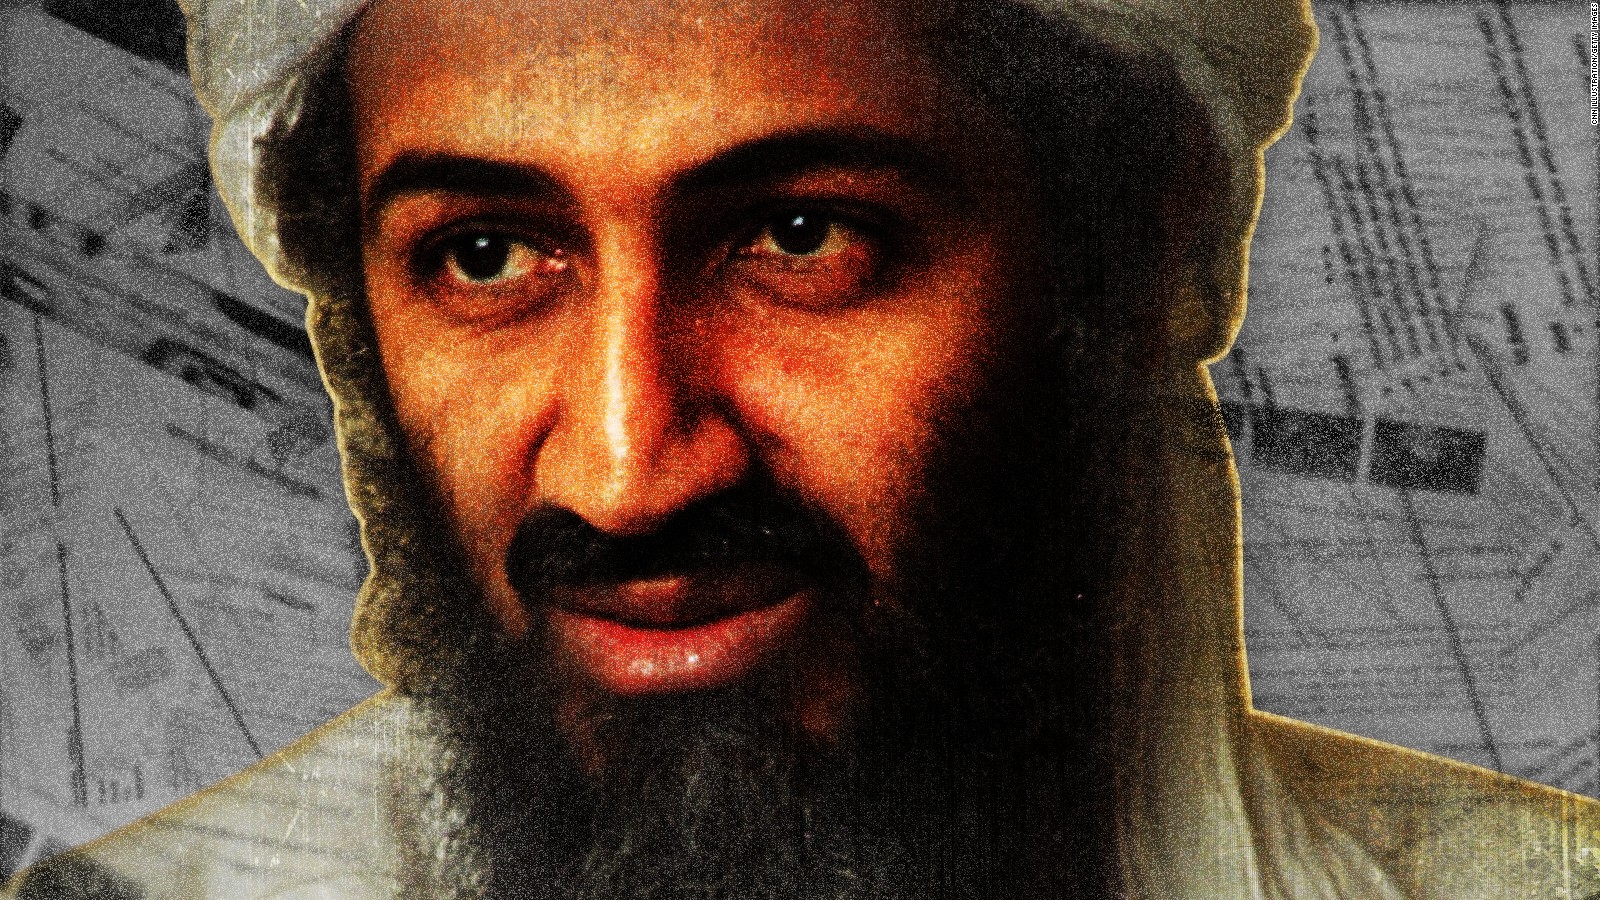 مقتل بن لادن ضَعضَع "القاعدة".. فاعتزم "داعش" الخلود